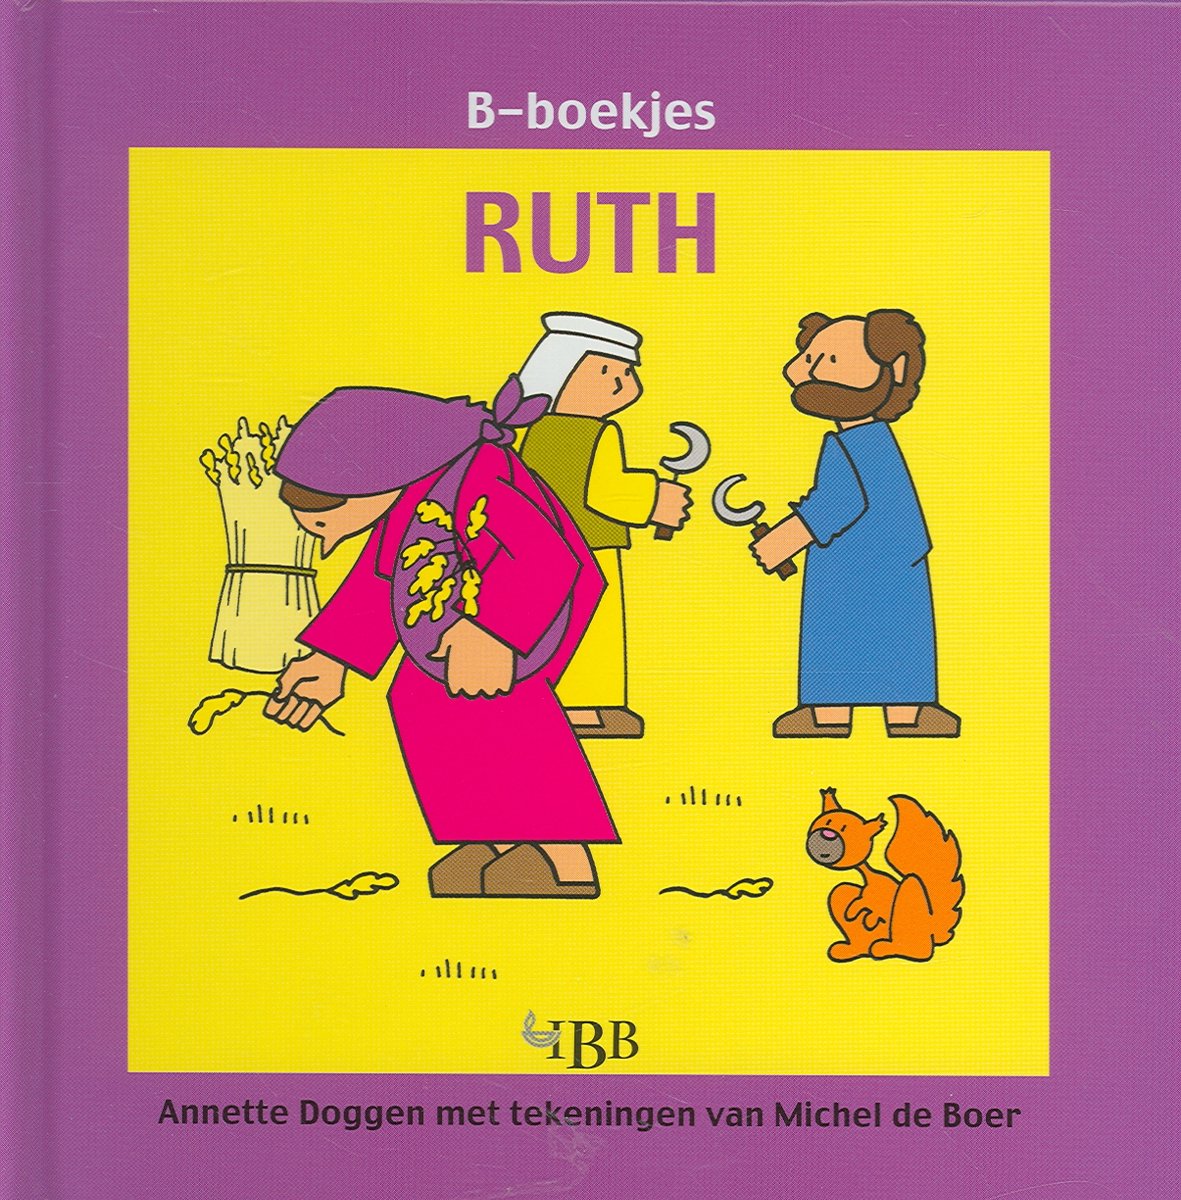 Ruth / B-boekjes